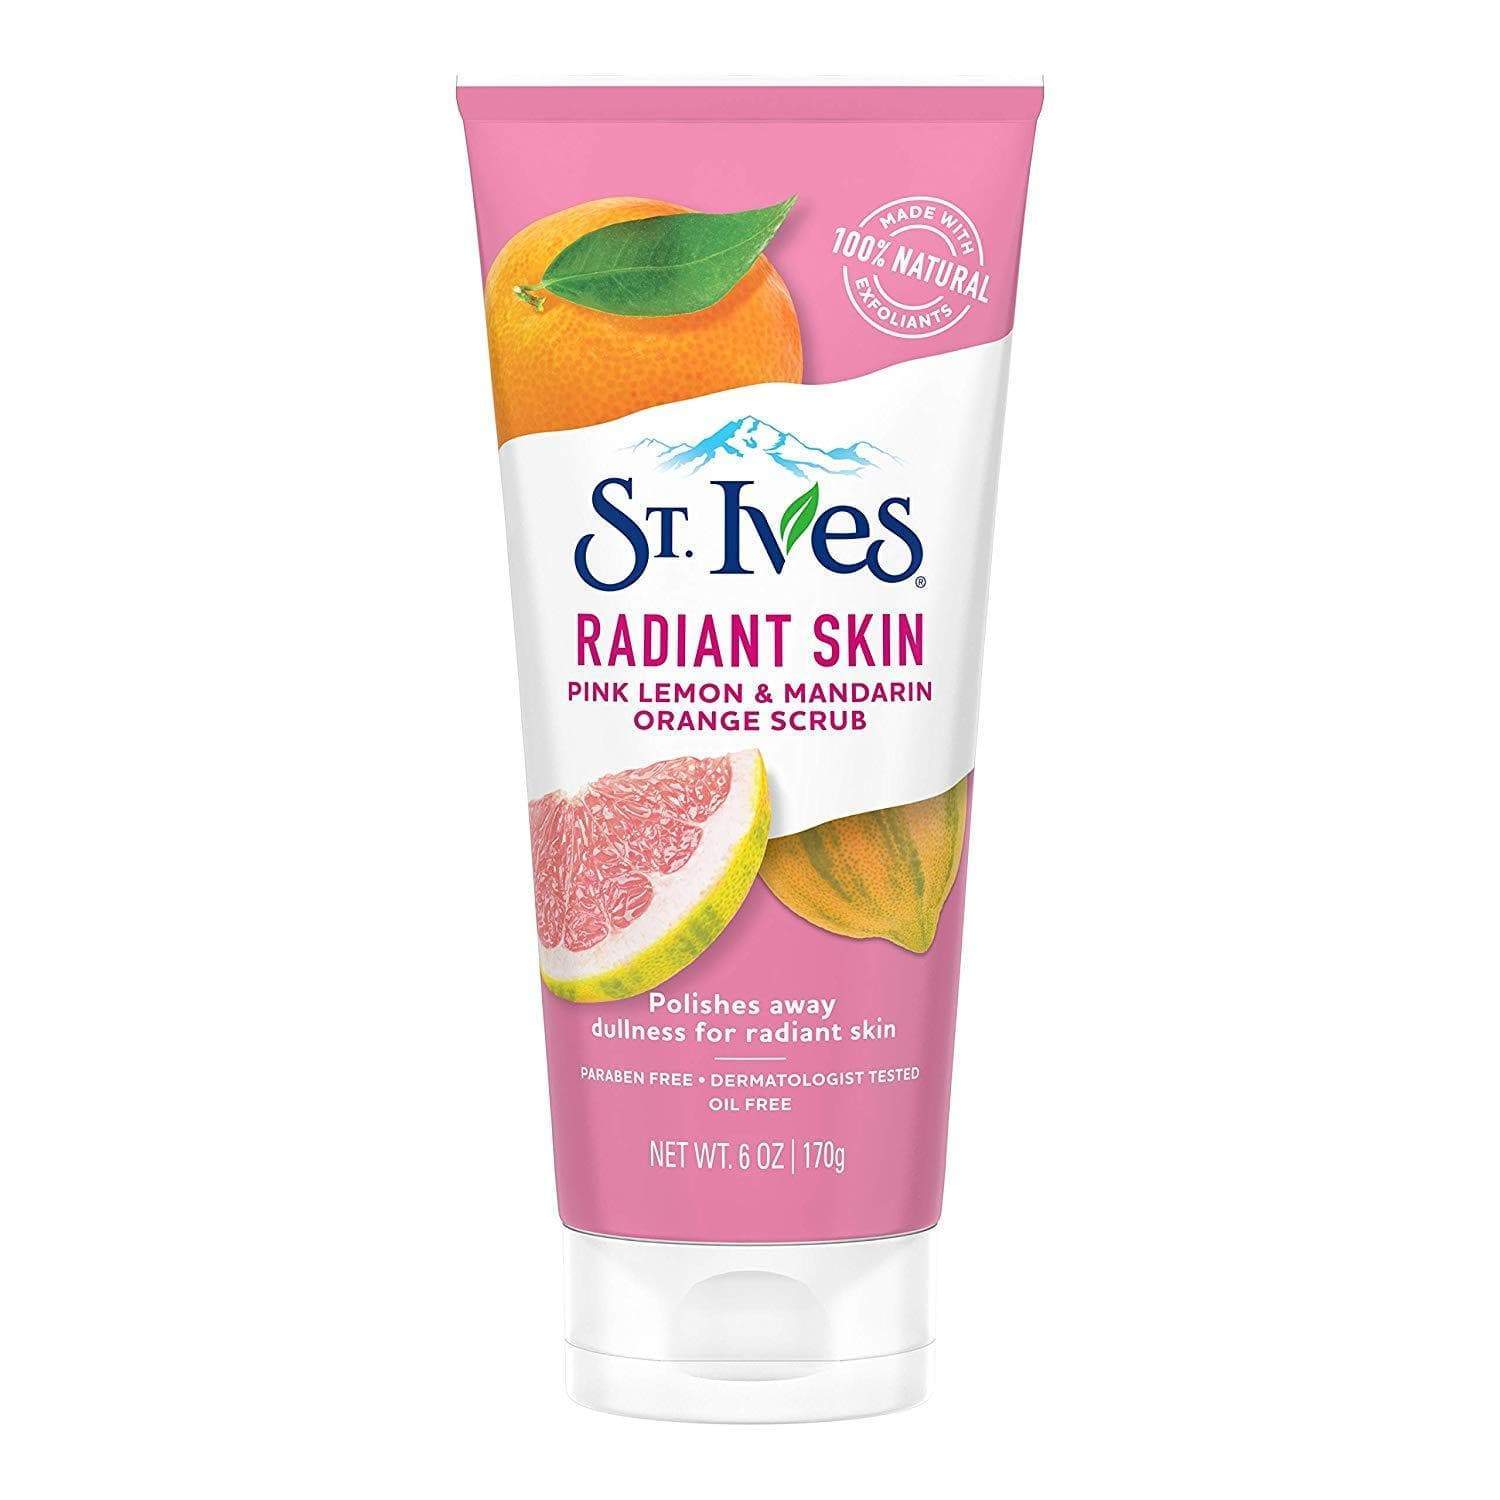 St. Ives Radiant skin Pink Lemon Minoustore